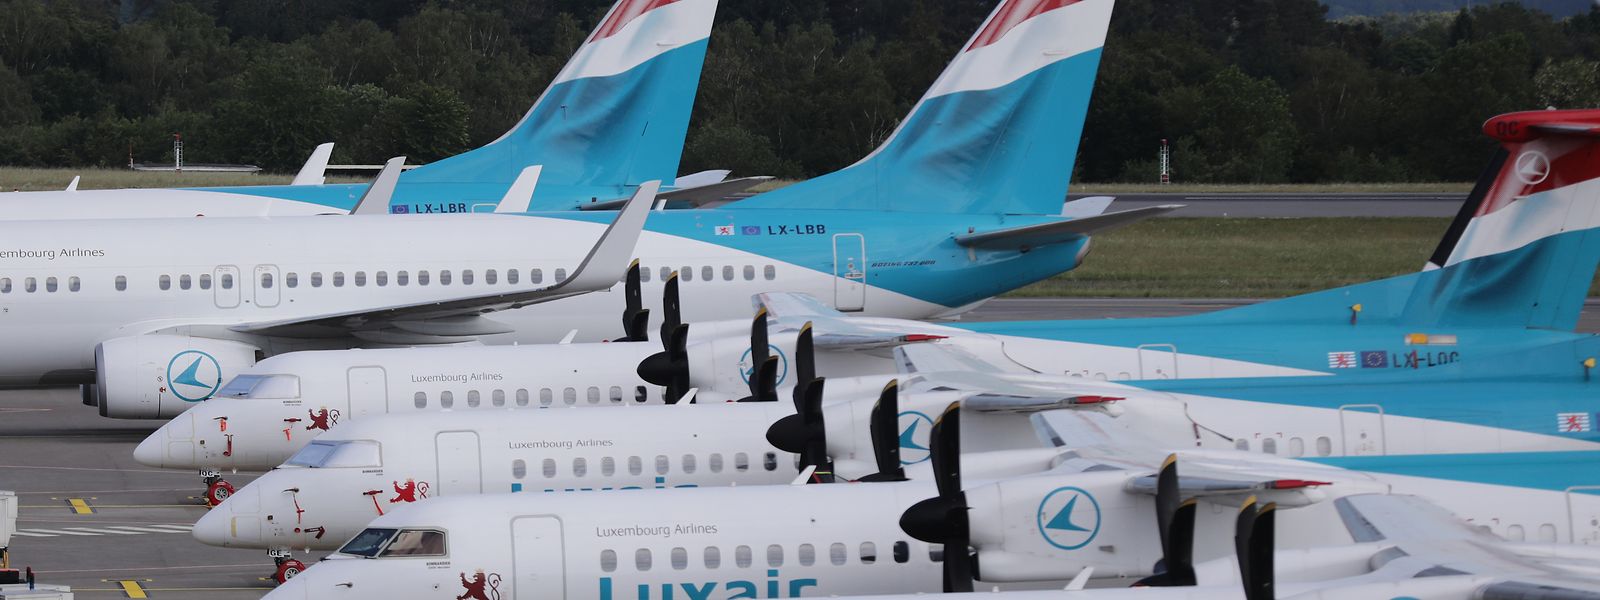 La compagnie aérienne luxembourgeoise indique qu'elle ne prévoit pas l'installation immédiate de la 4G et 5G à bord de ses appareils.